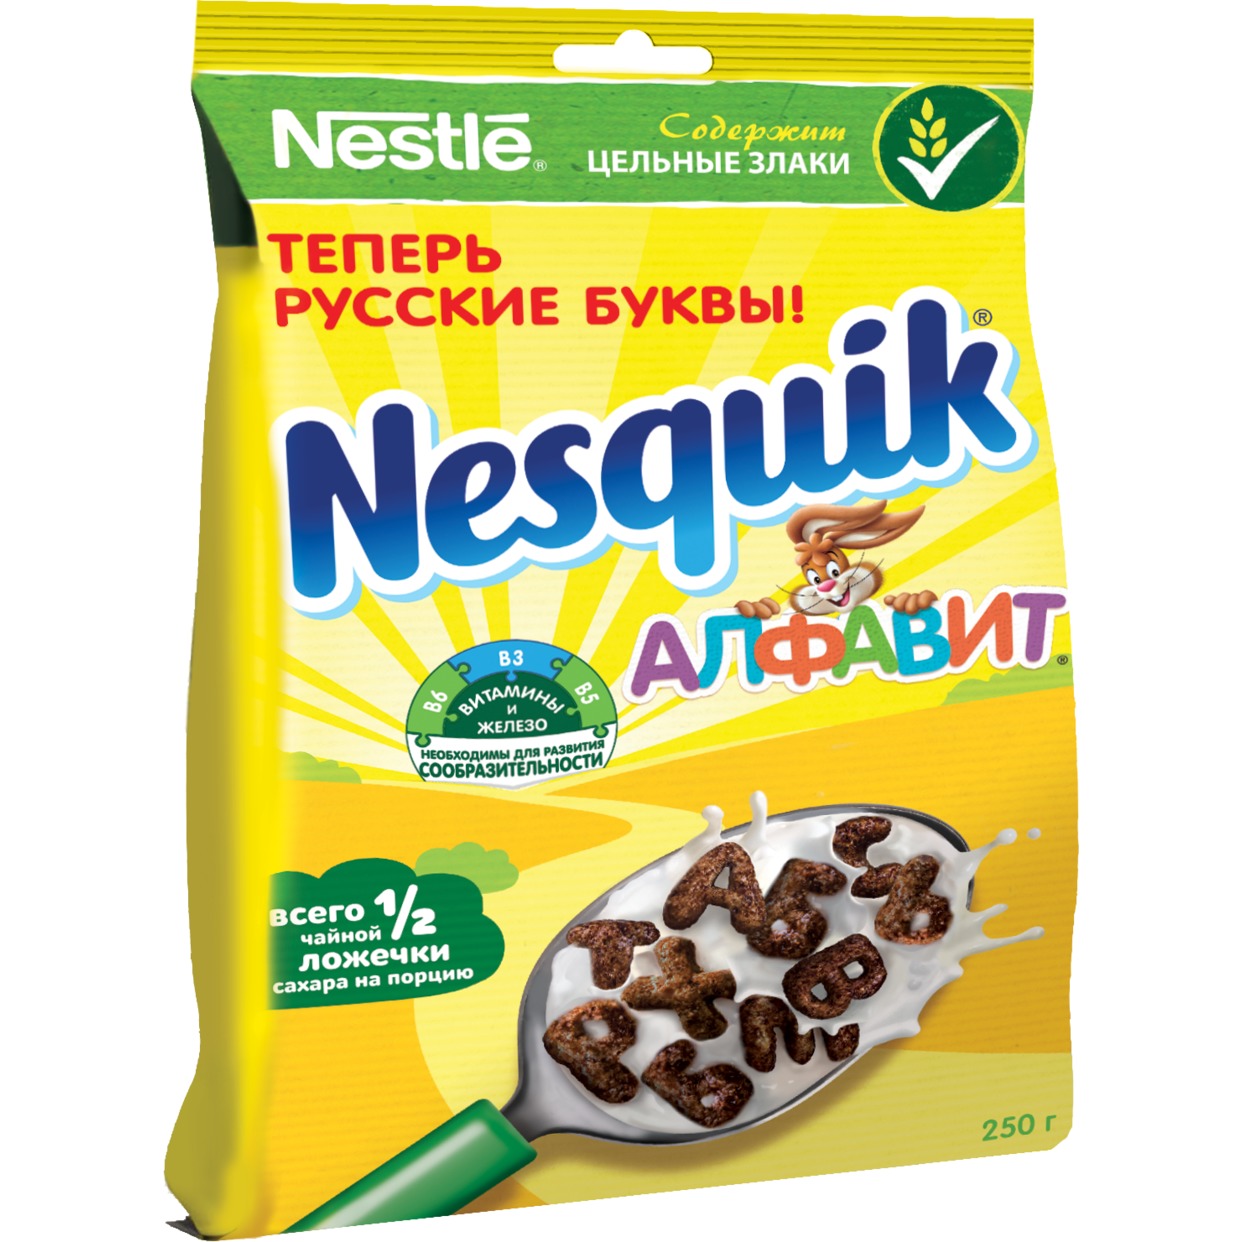 NESQUIK Алфавит. Готовый шоколадный завтрак, обогащенный витаминами и минеральными веществами,250г